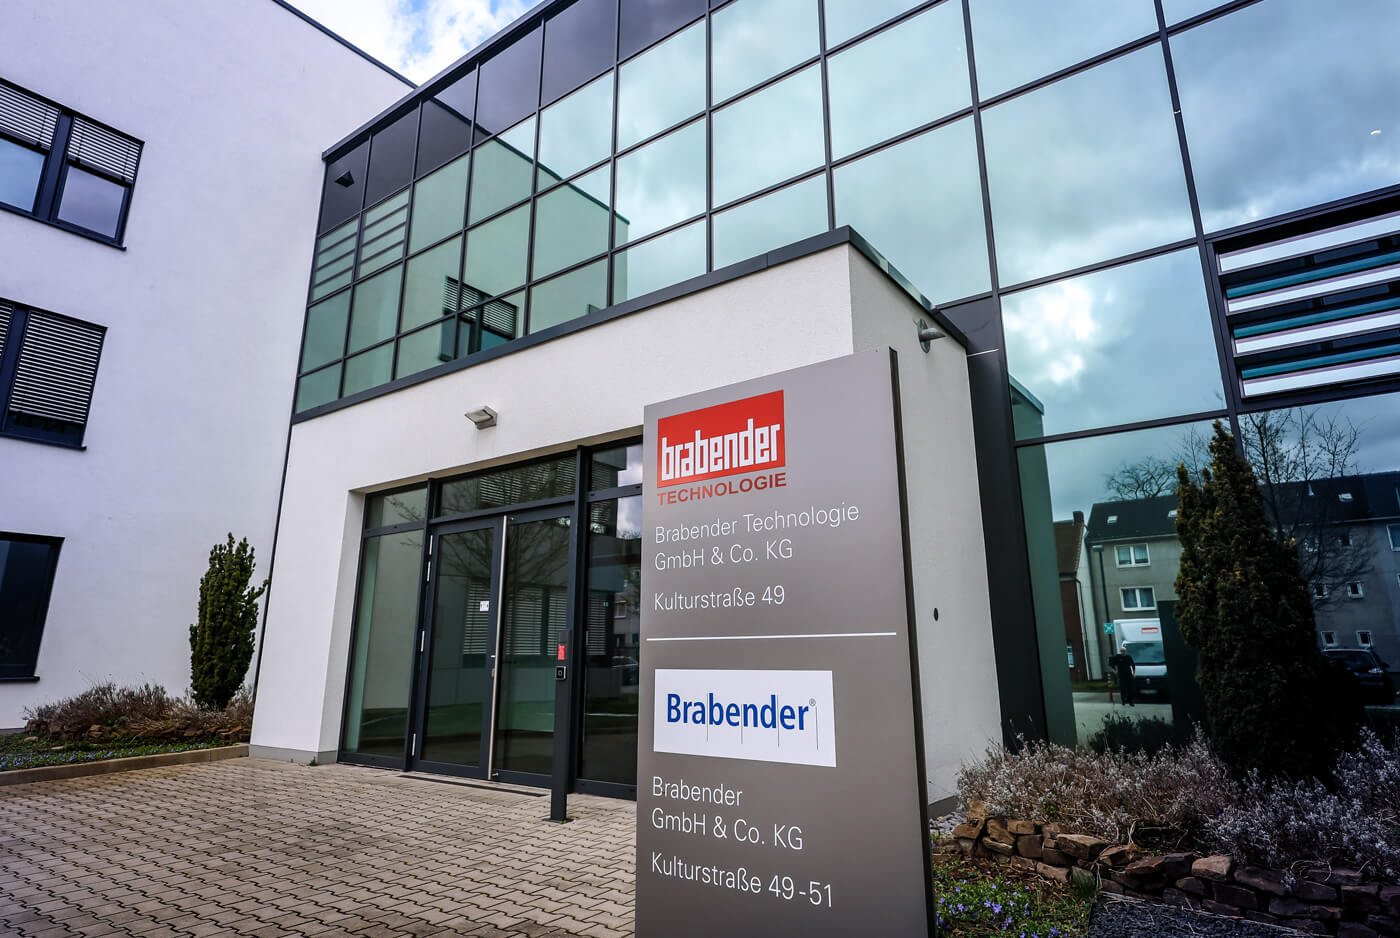 Die Brabender GmbH & Co. KG ist ein welttätiger Hersteller von Mess- und Verfahrenstechnik für die Nahrungs-, Futtermittel- und Kunststoffindustrie.